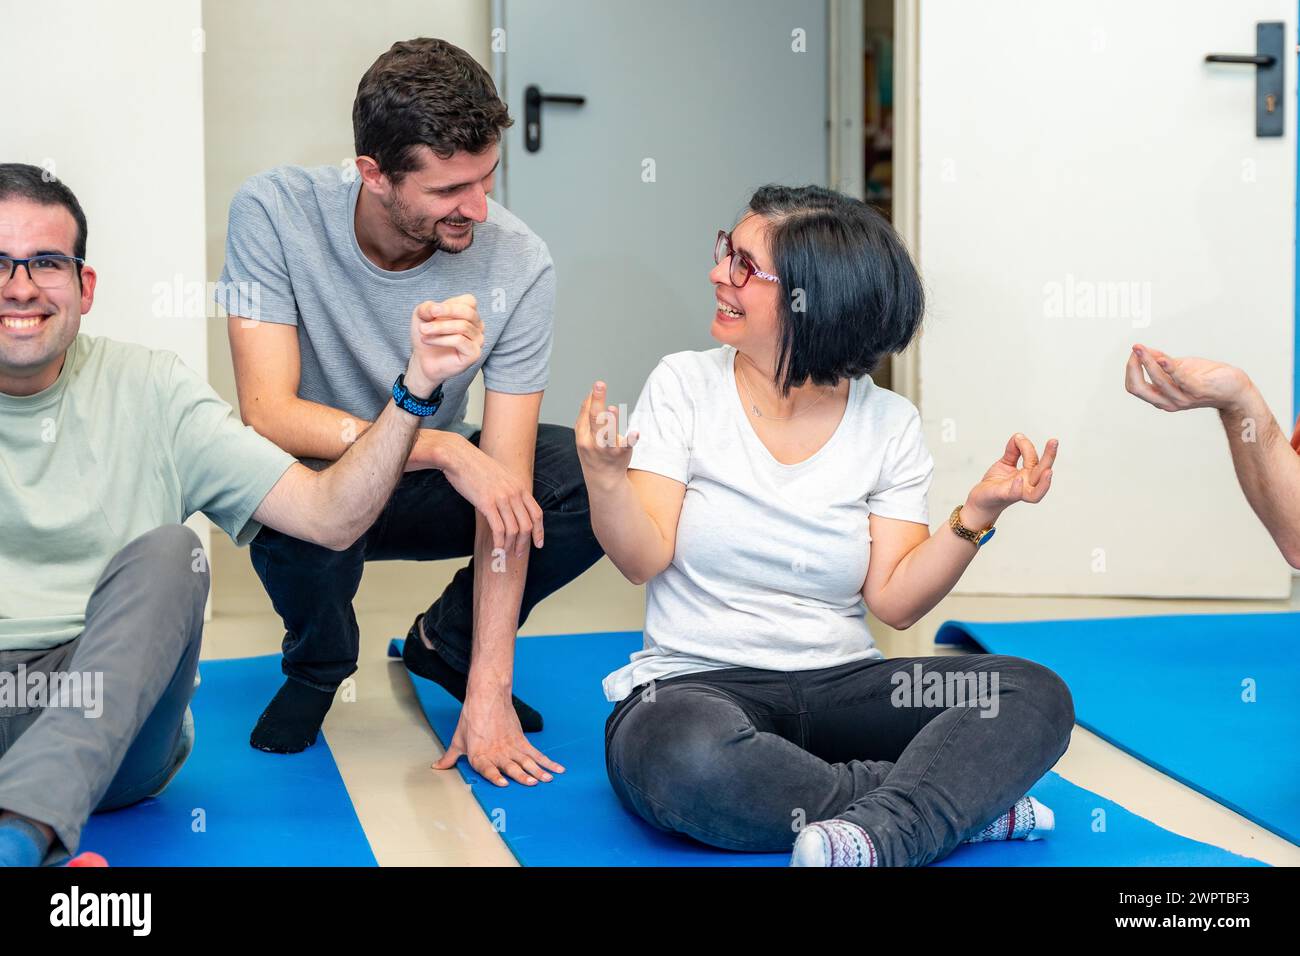 Instructor de yoga hablando con una mujer adulta discapacitada feliz sentada en una esterilla durante la clase de yoga Foto de stock